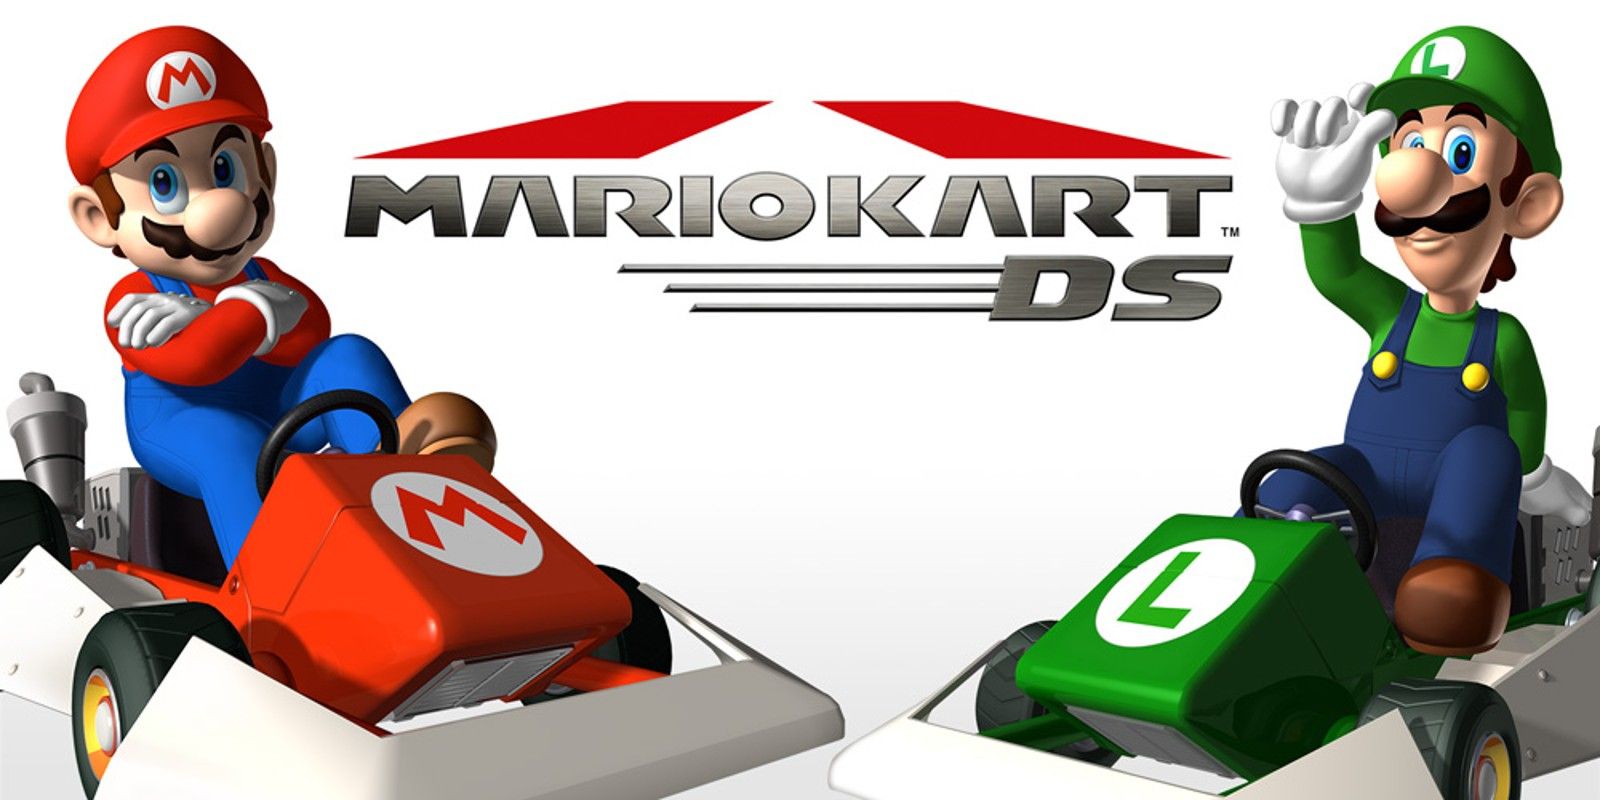 Sampul promosi Mario Kart DS dengan Mario dan Luigi di kart mereka.